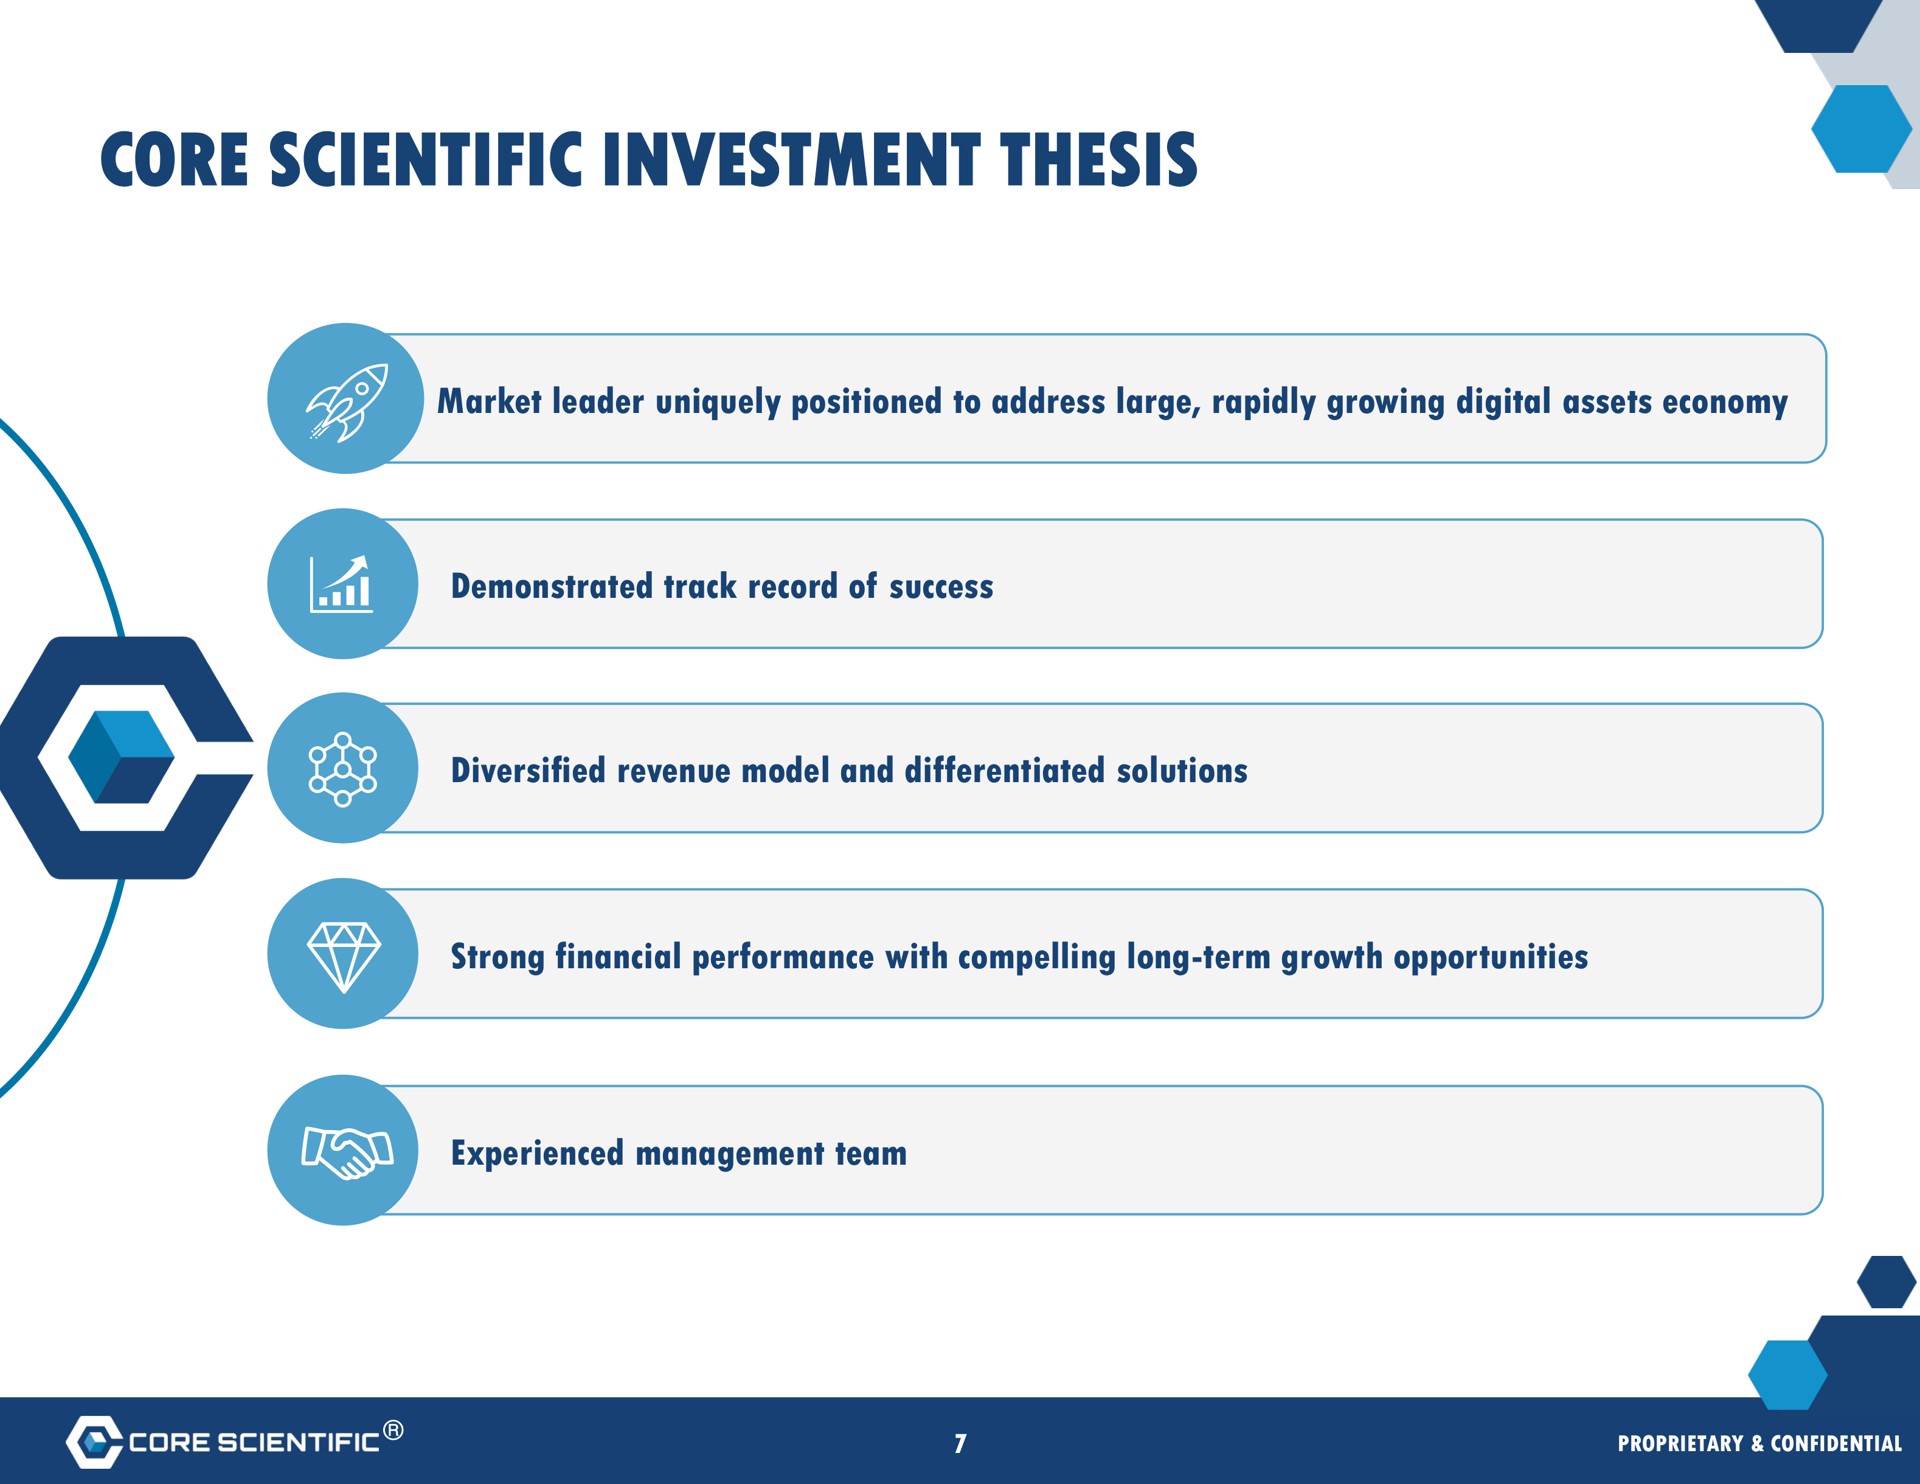 core scientific investment thesis is | Core Scientific